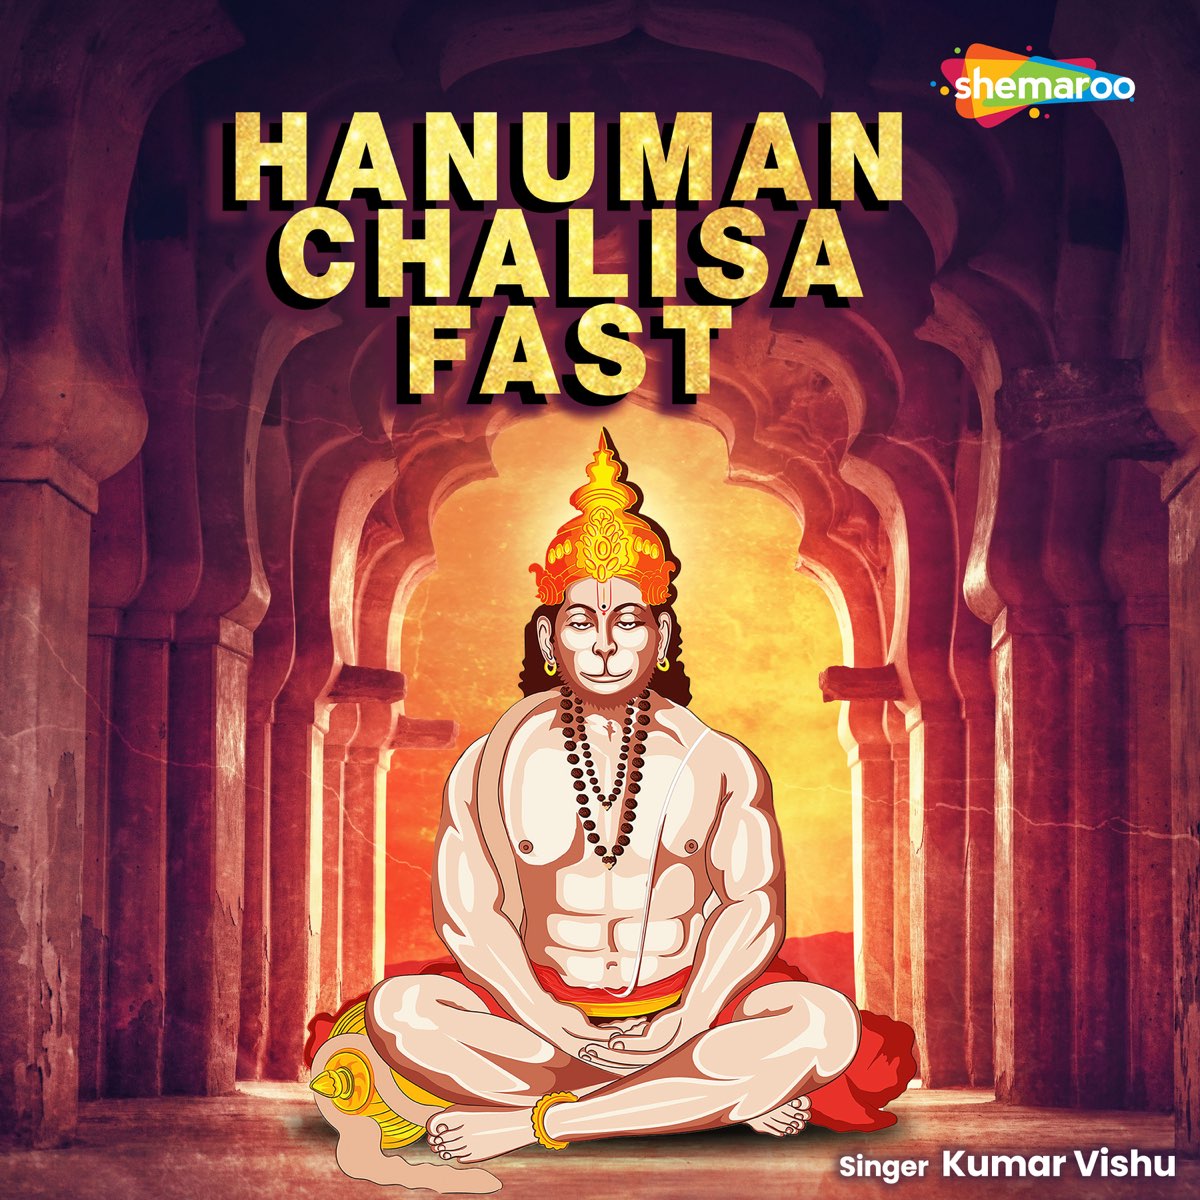 Hanuman Chalisa Fast - Single by Kumar Vishu on Apple Music